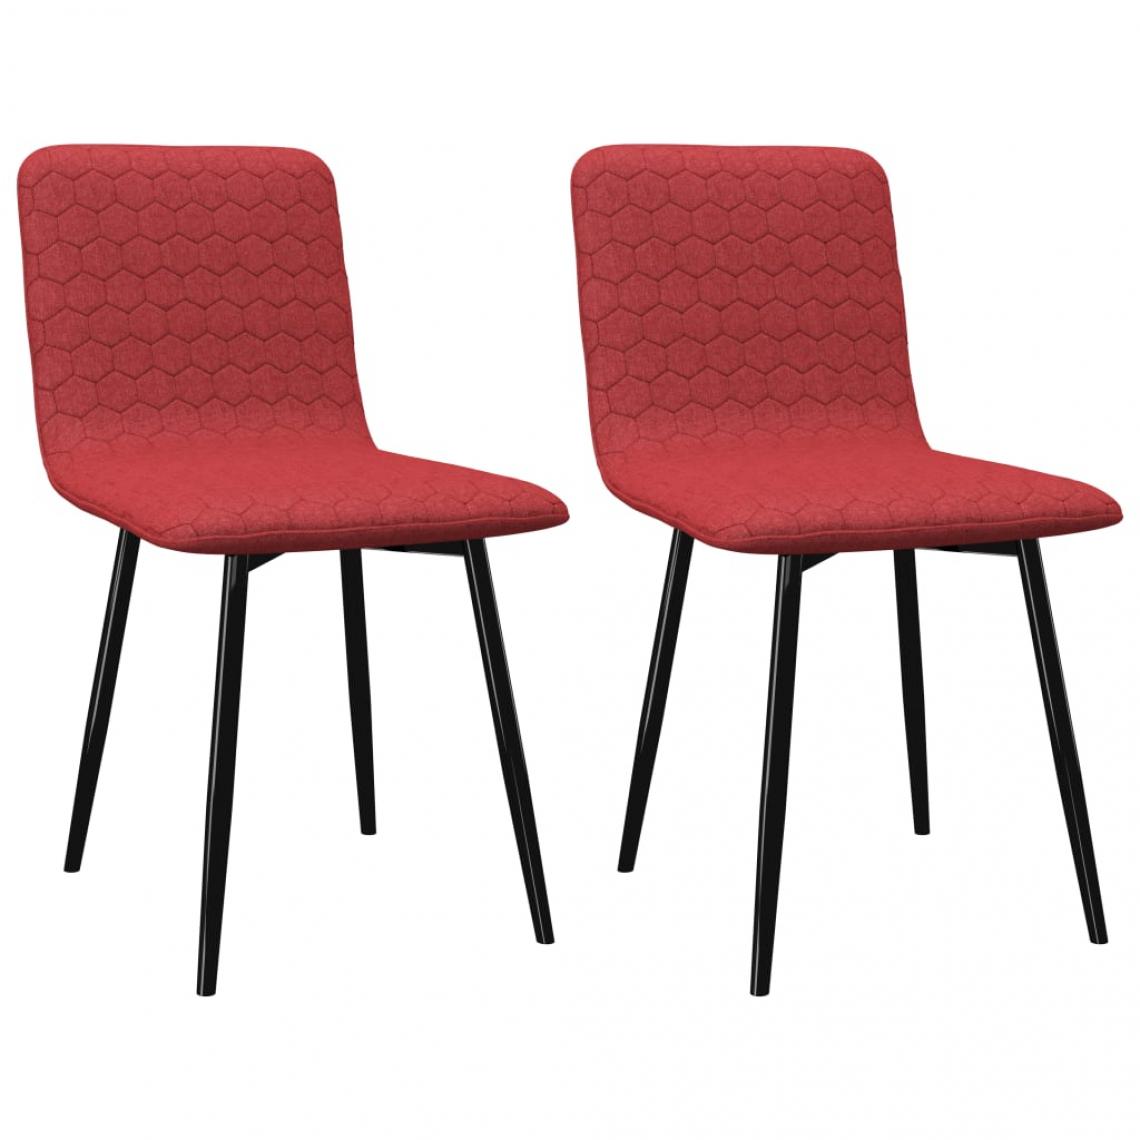 Decoshop26 - Lot de 2 chaises de salle à manger cuisine design moderne tissu bordeaux CDS020294 - Chaises